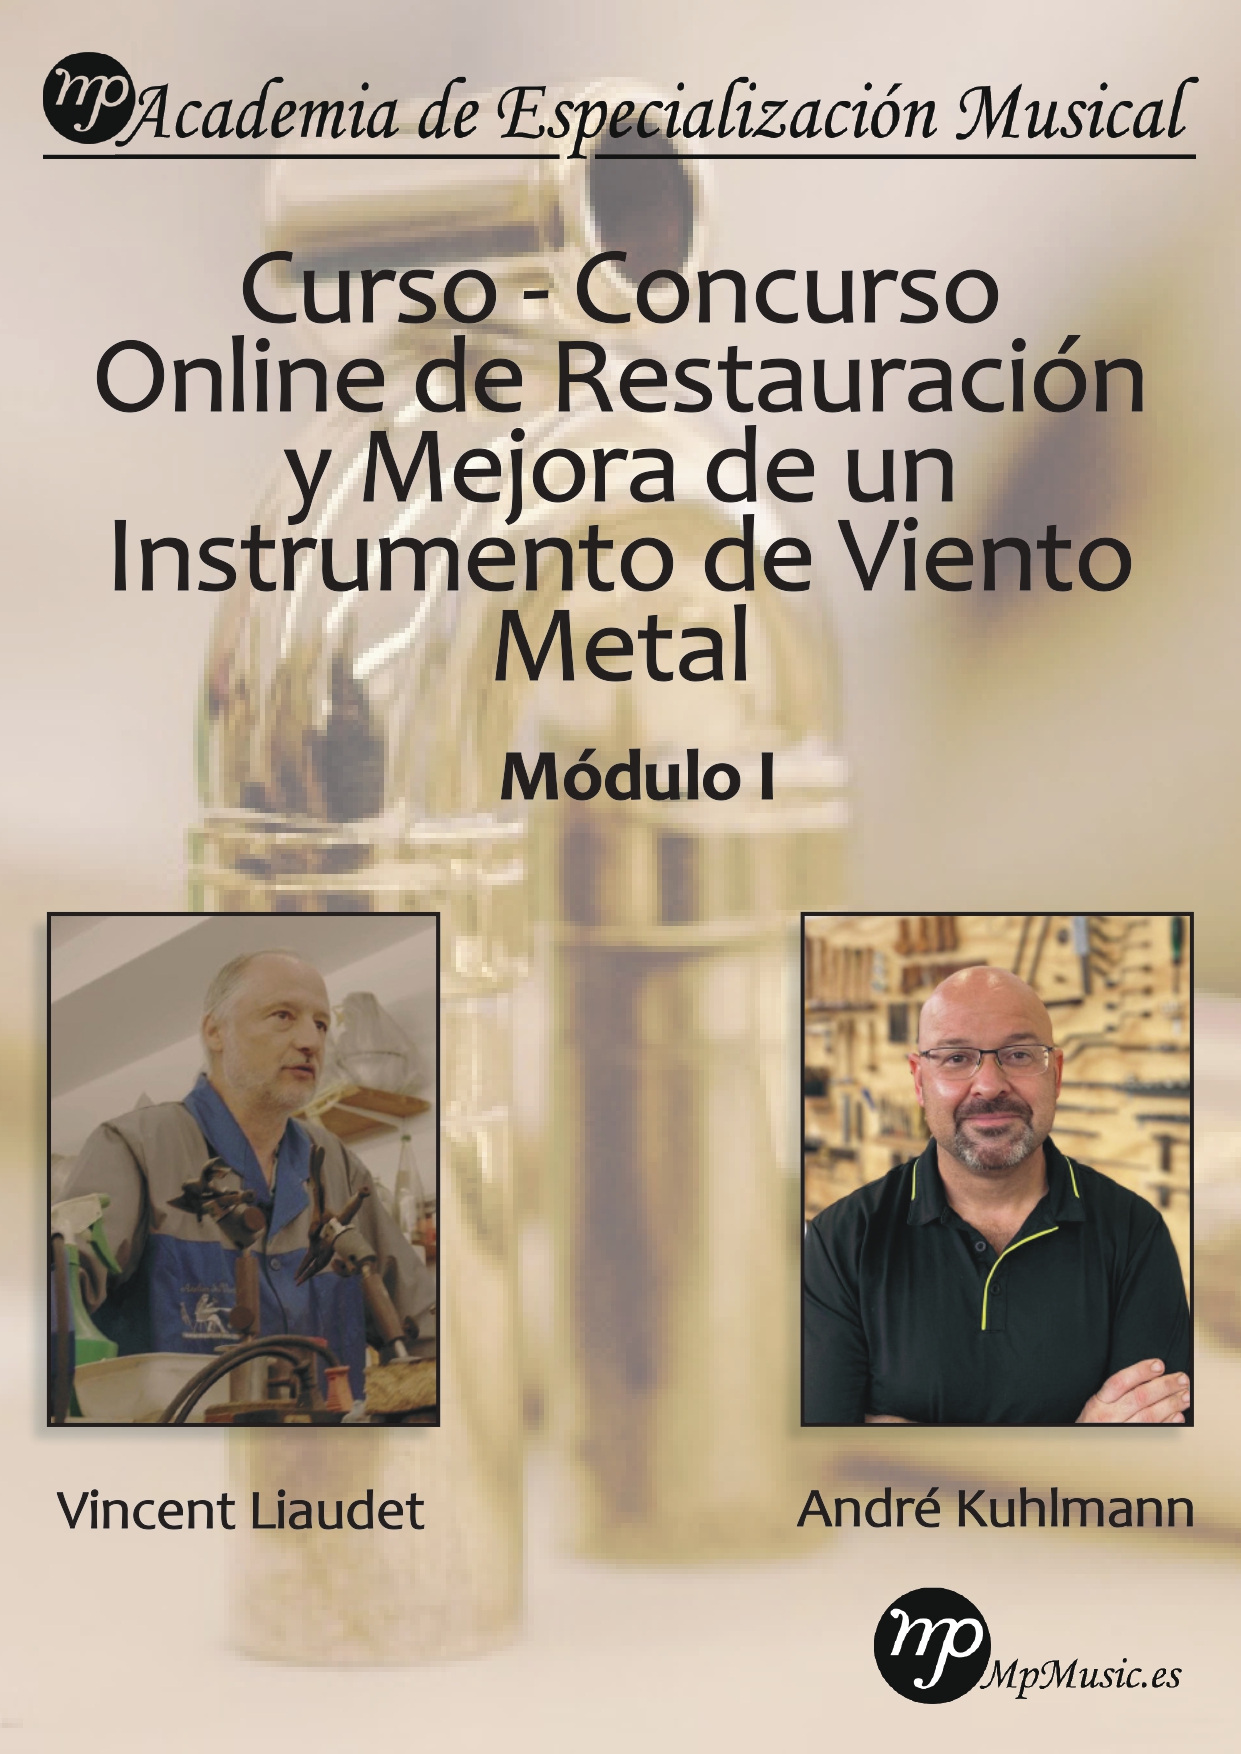 Curso - Concurso Online de Restauración y Mejora de un Instrumento de Viento Metal